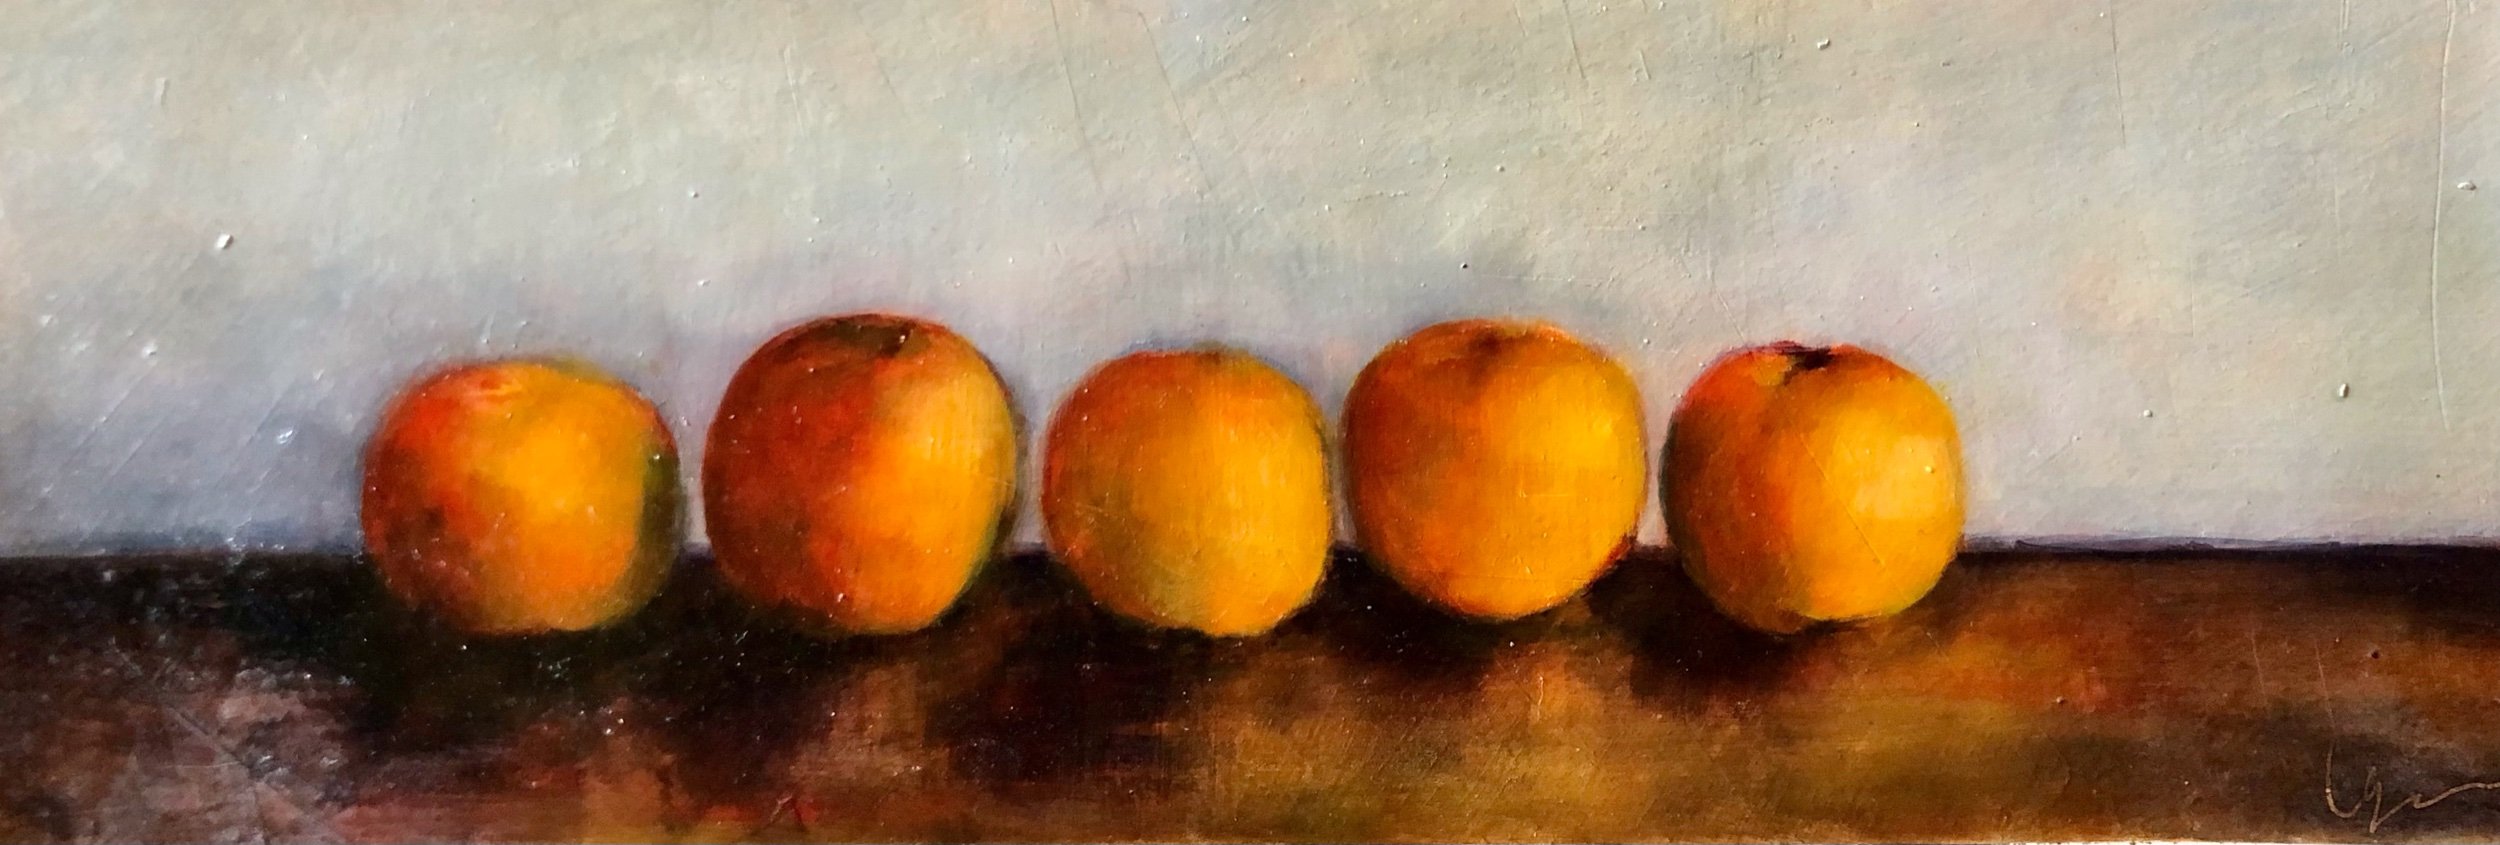 5 apricots 